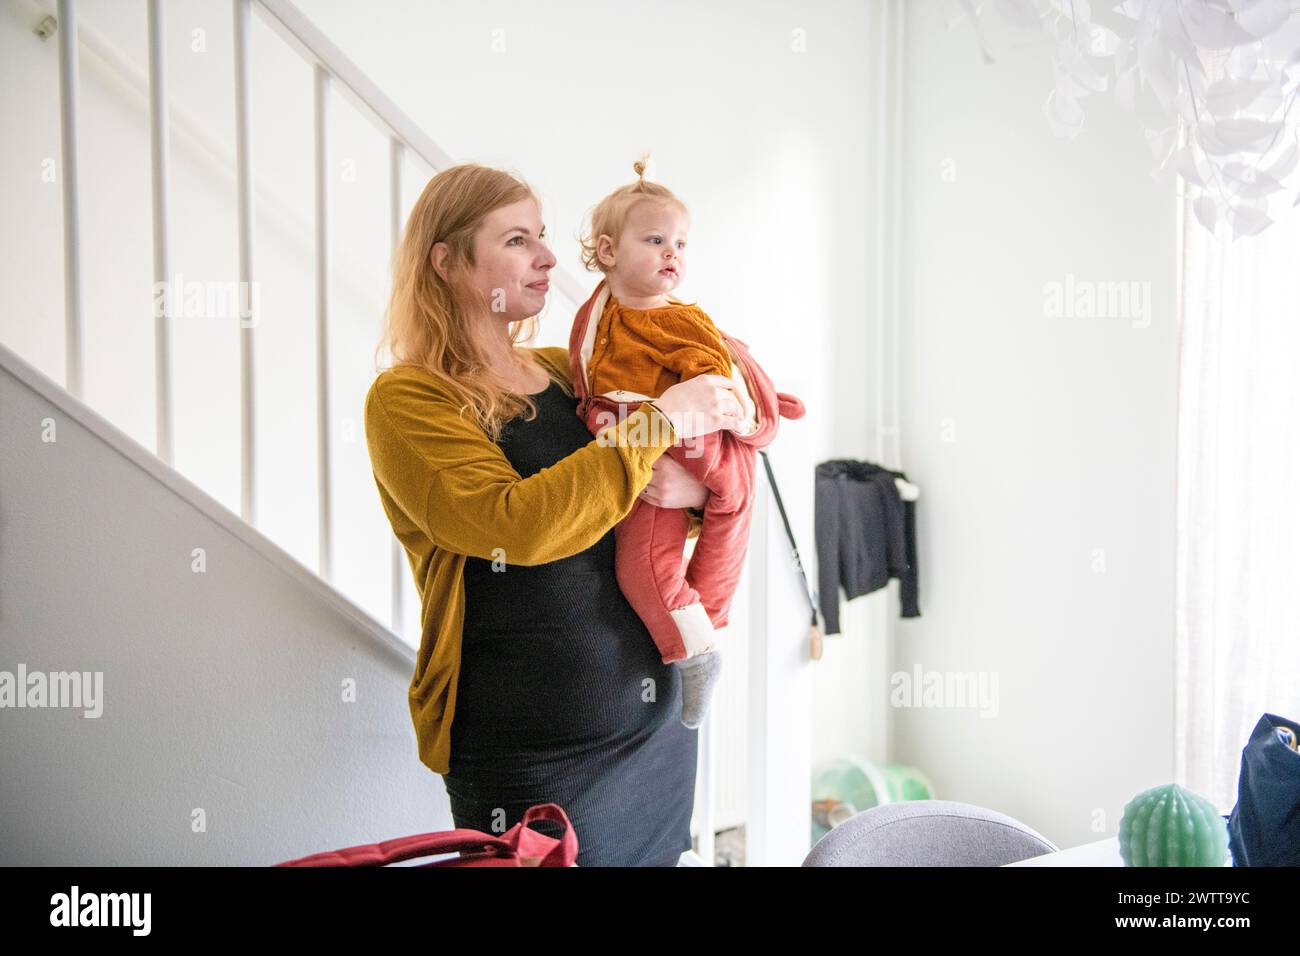 Mutter hält ihr kleines Kind, während sie an der Treppe steht, und blickt mit sanfter Neugier nach vorne. Stockfoto